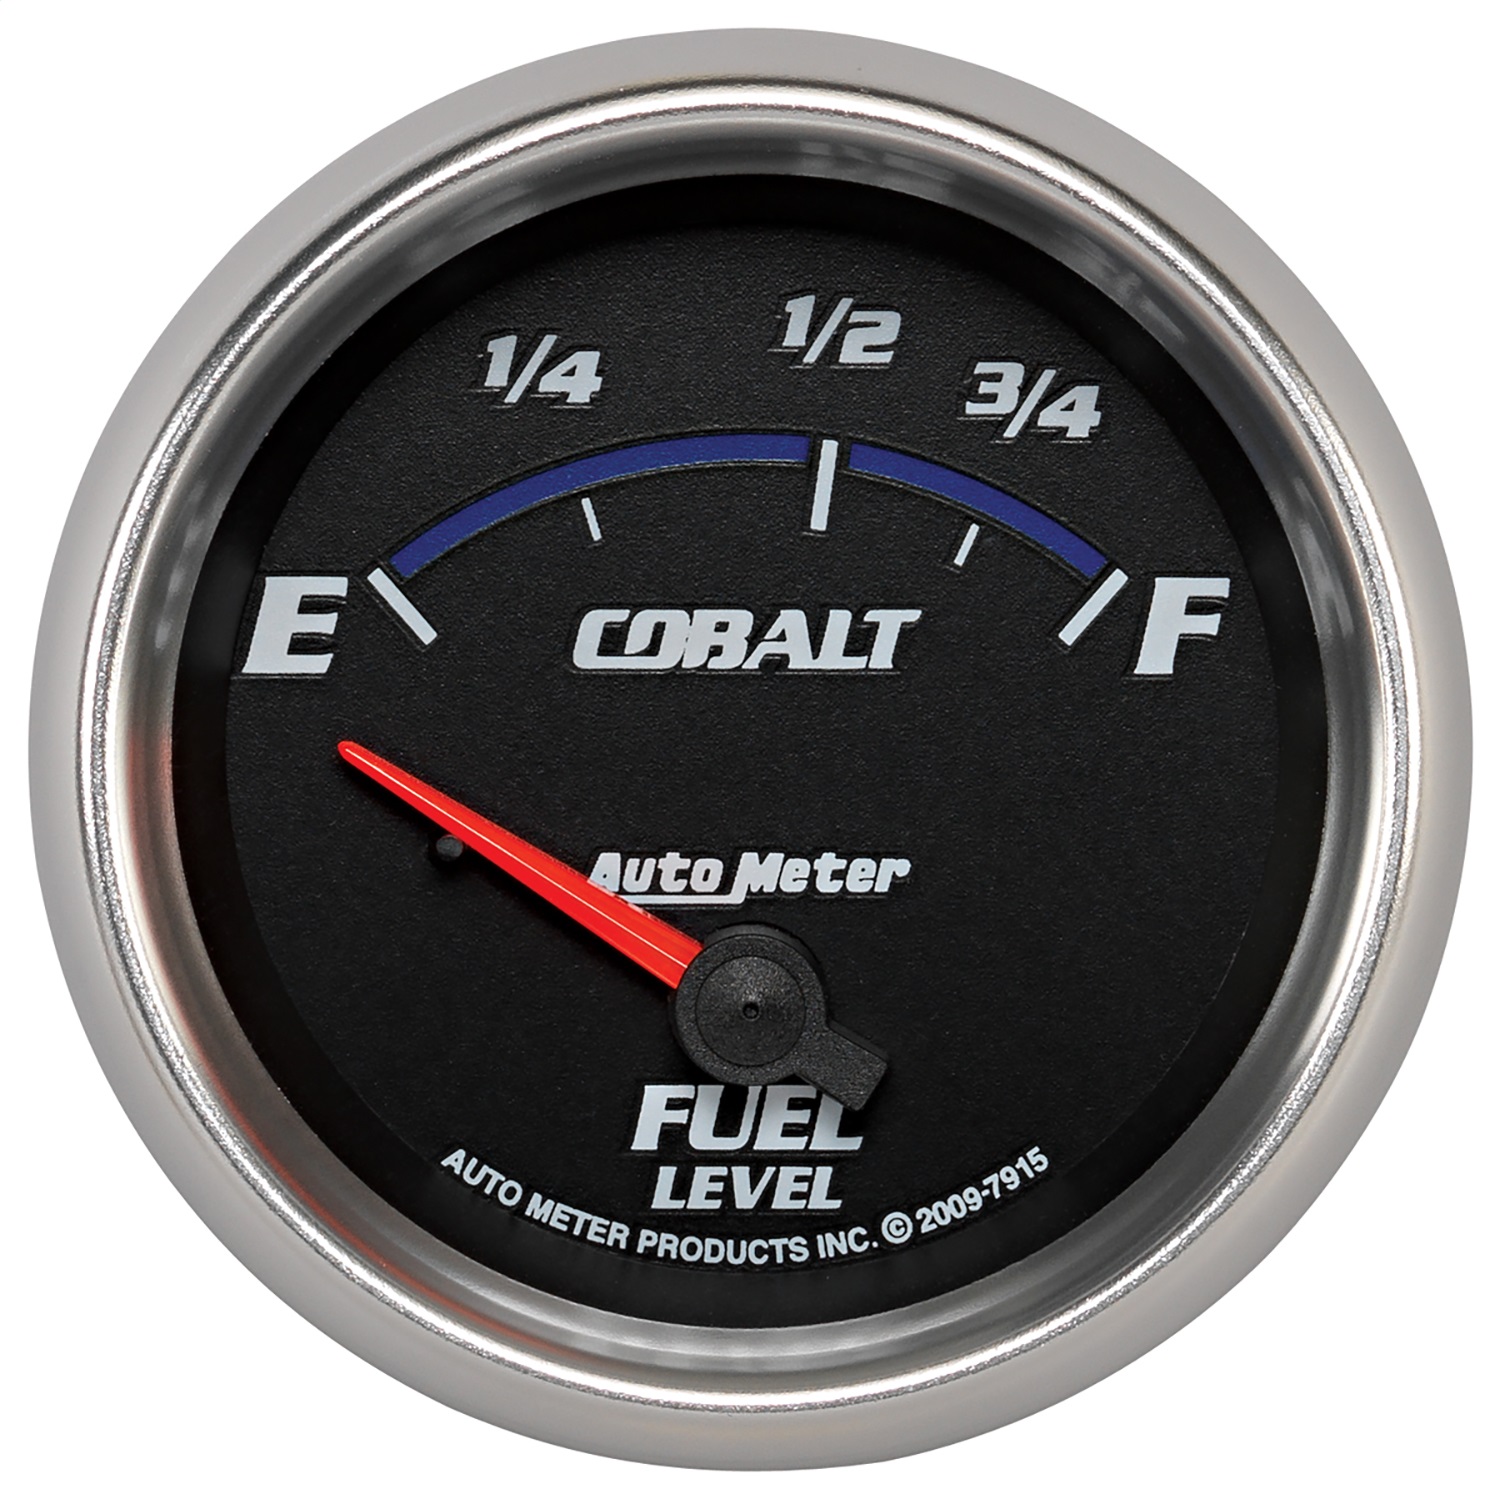 Auto Meter Auto Meter 7915 Cobalt; Electric Fuel Level Gauge